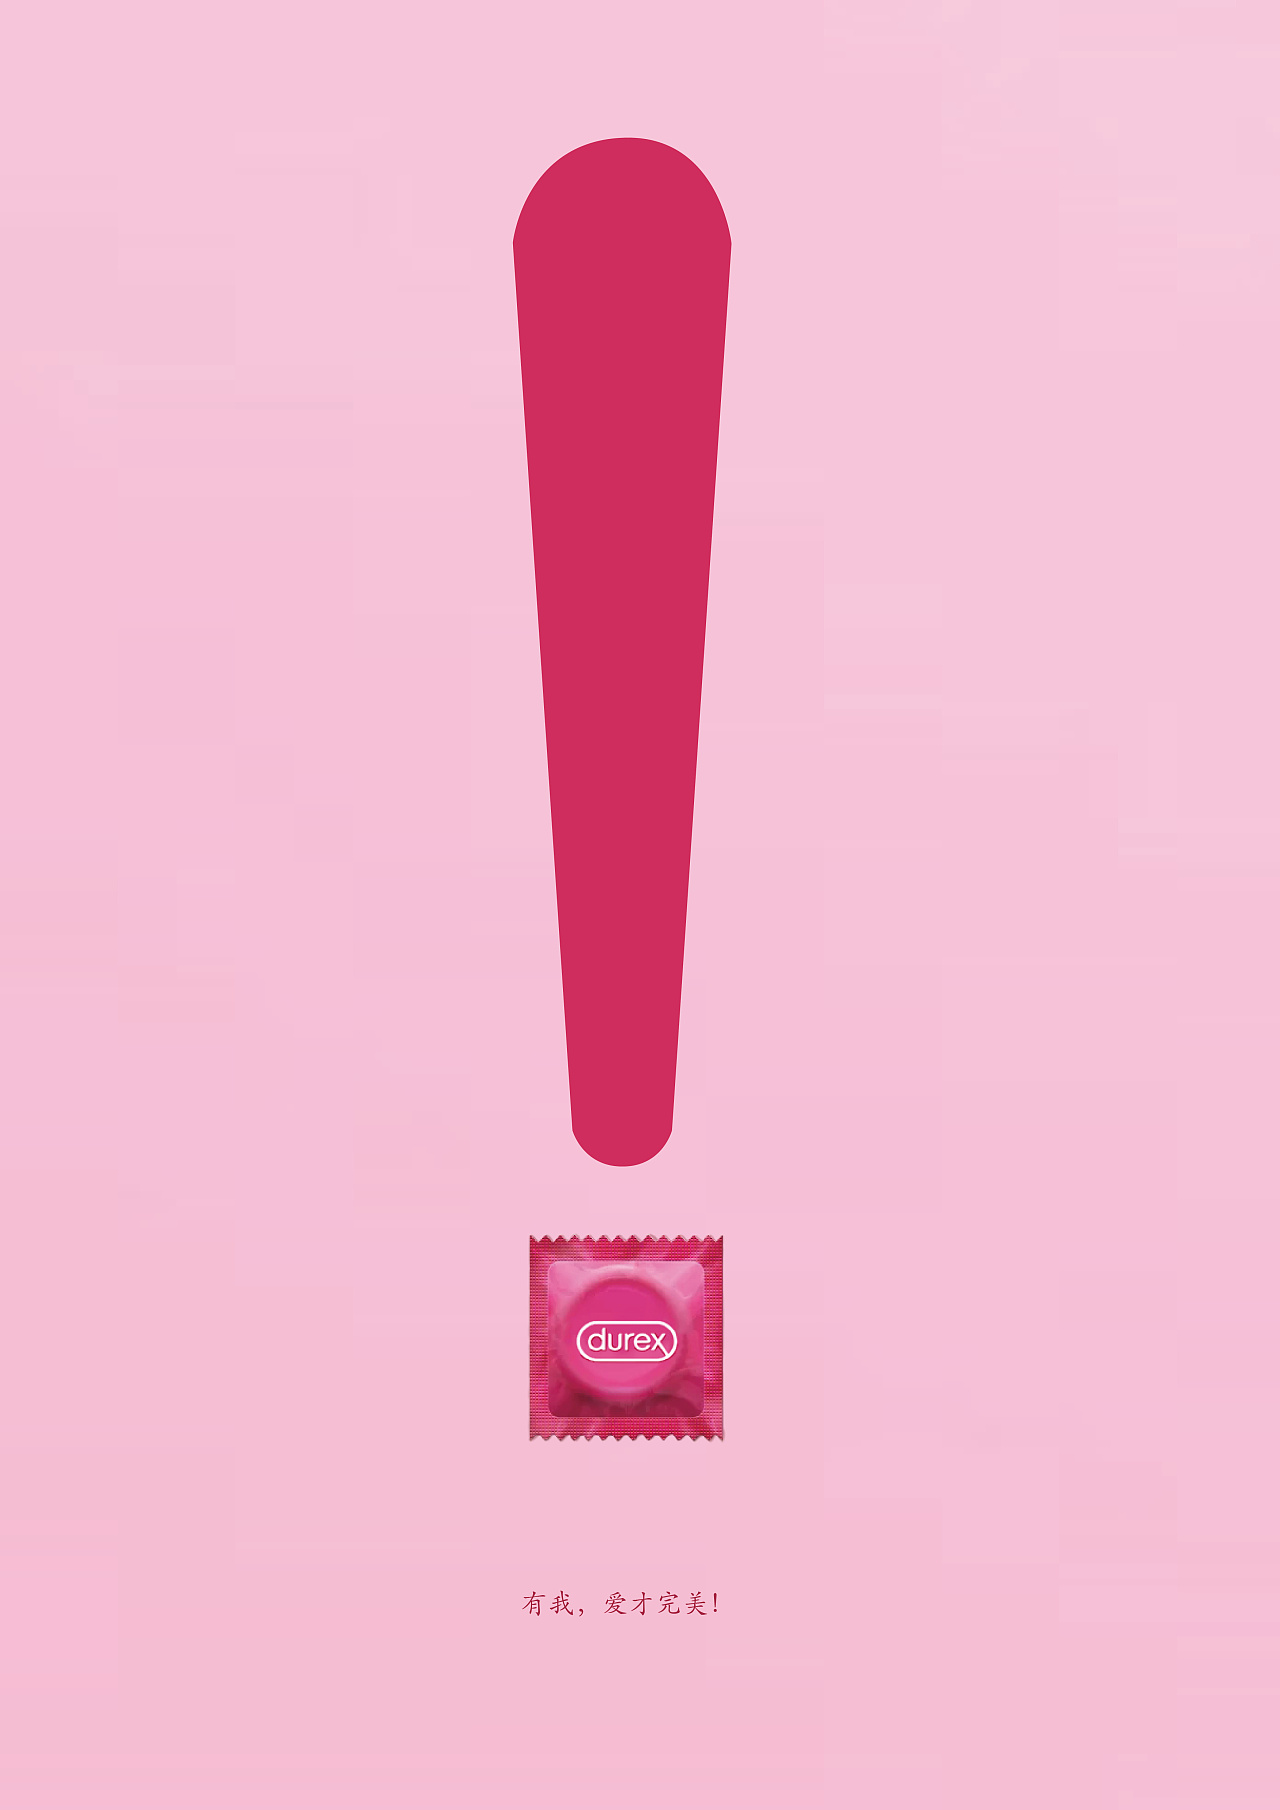 杜蕾斯避孕套海报图片